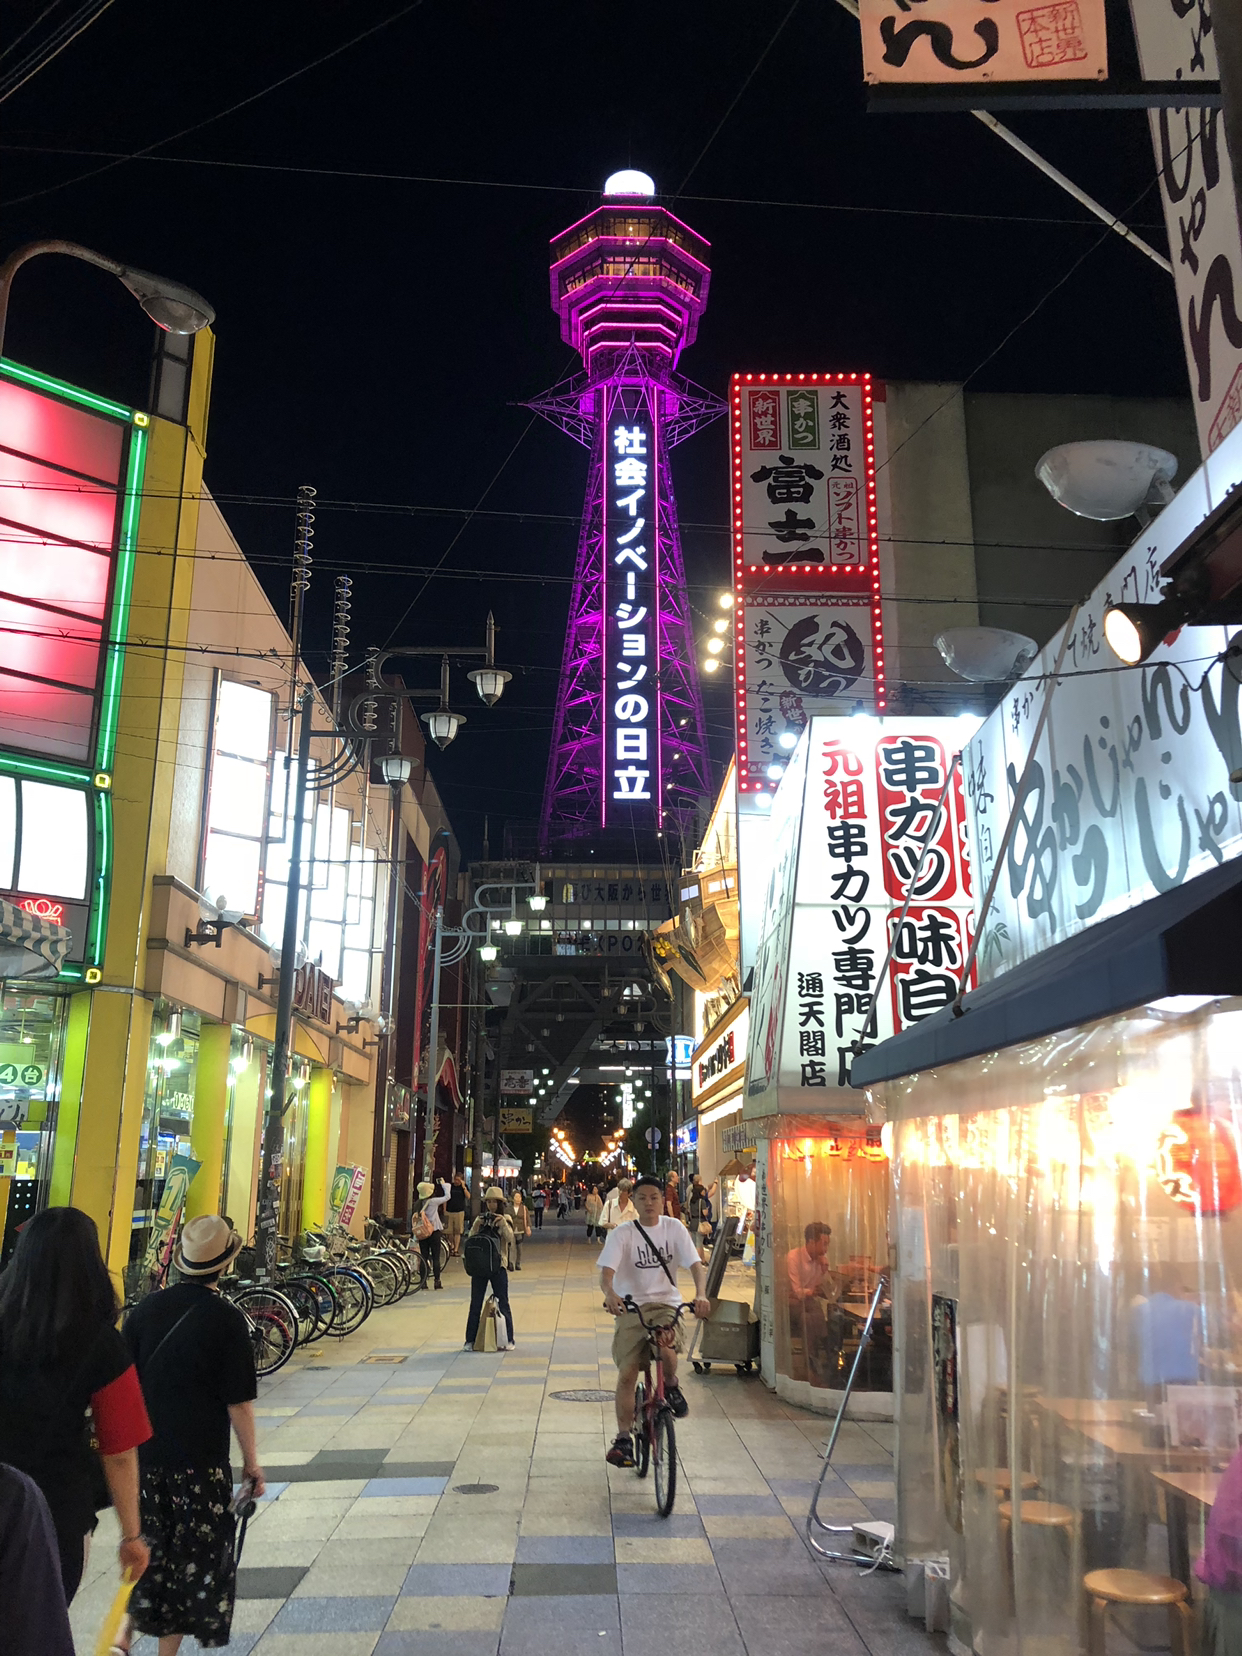 大阪的新世界本通商店街游客现在还会去吗 听说治安不好 马蜂窝问答